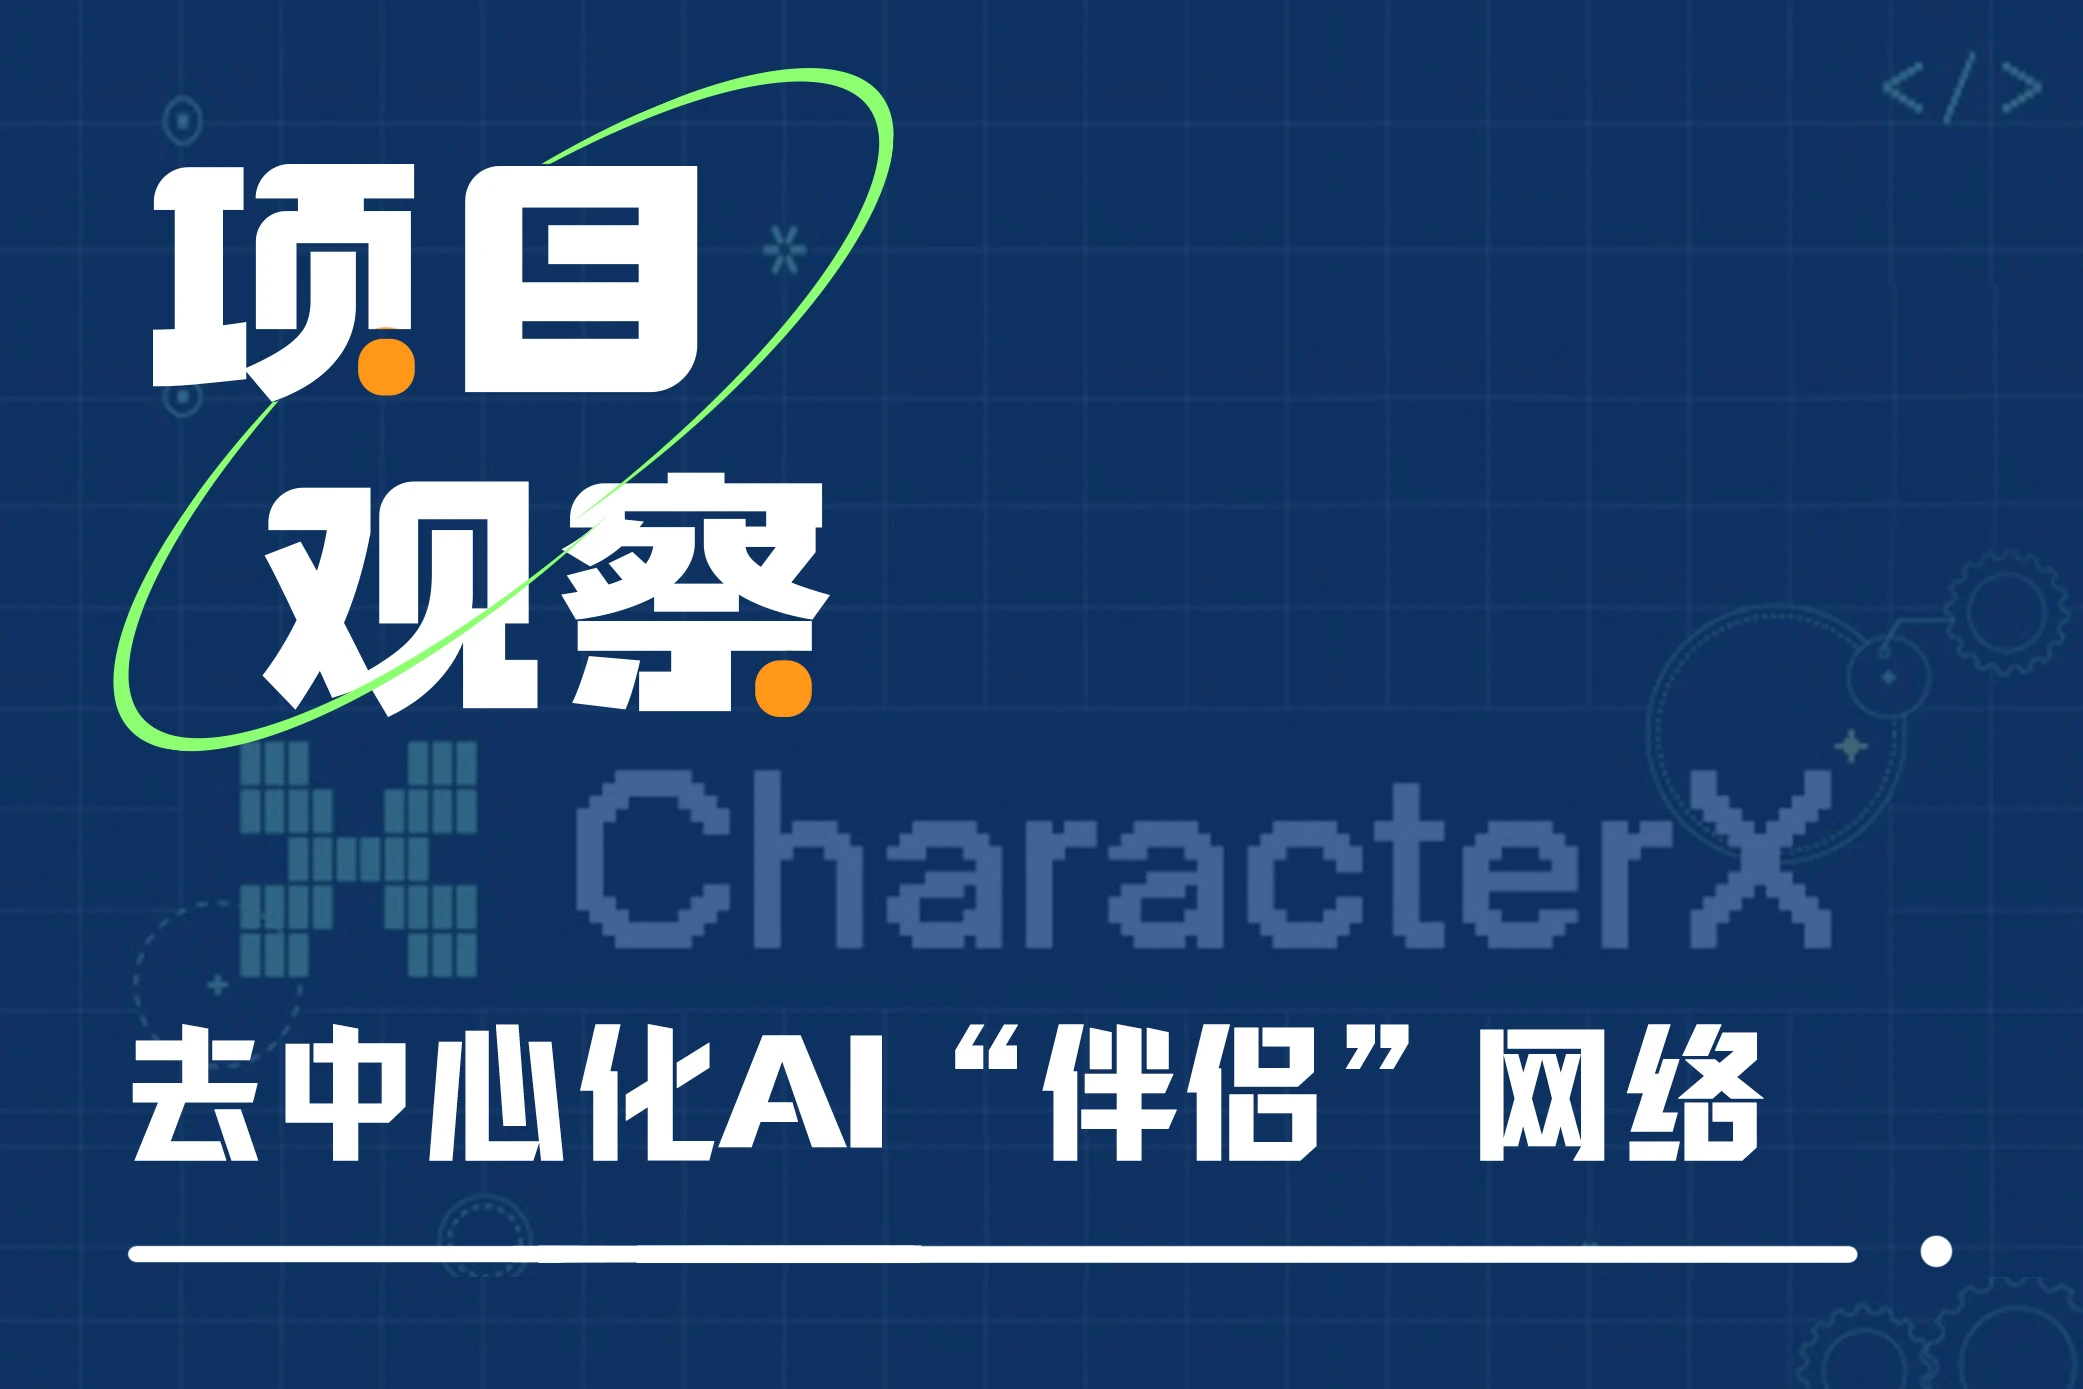 一文读懂CharacterX：去中心化的AI“伴侣”网络